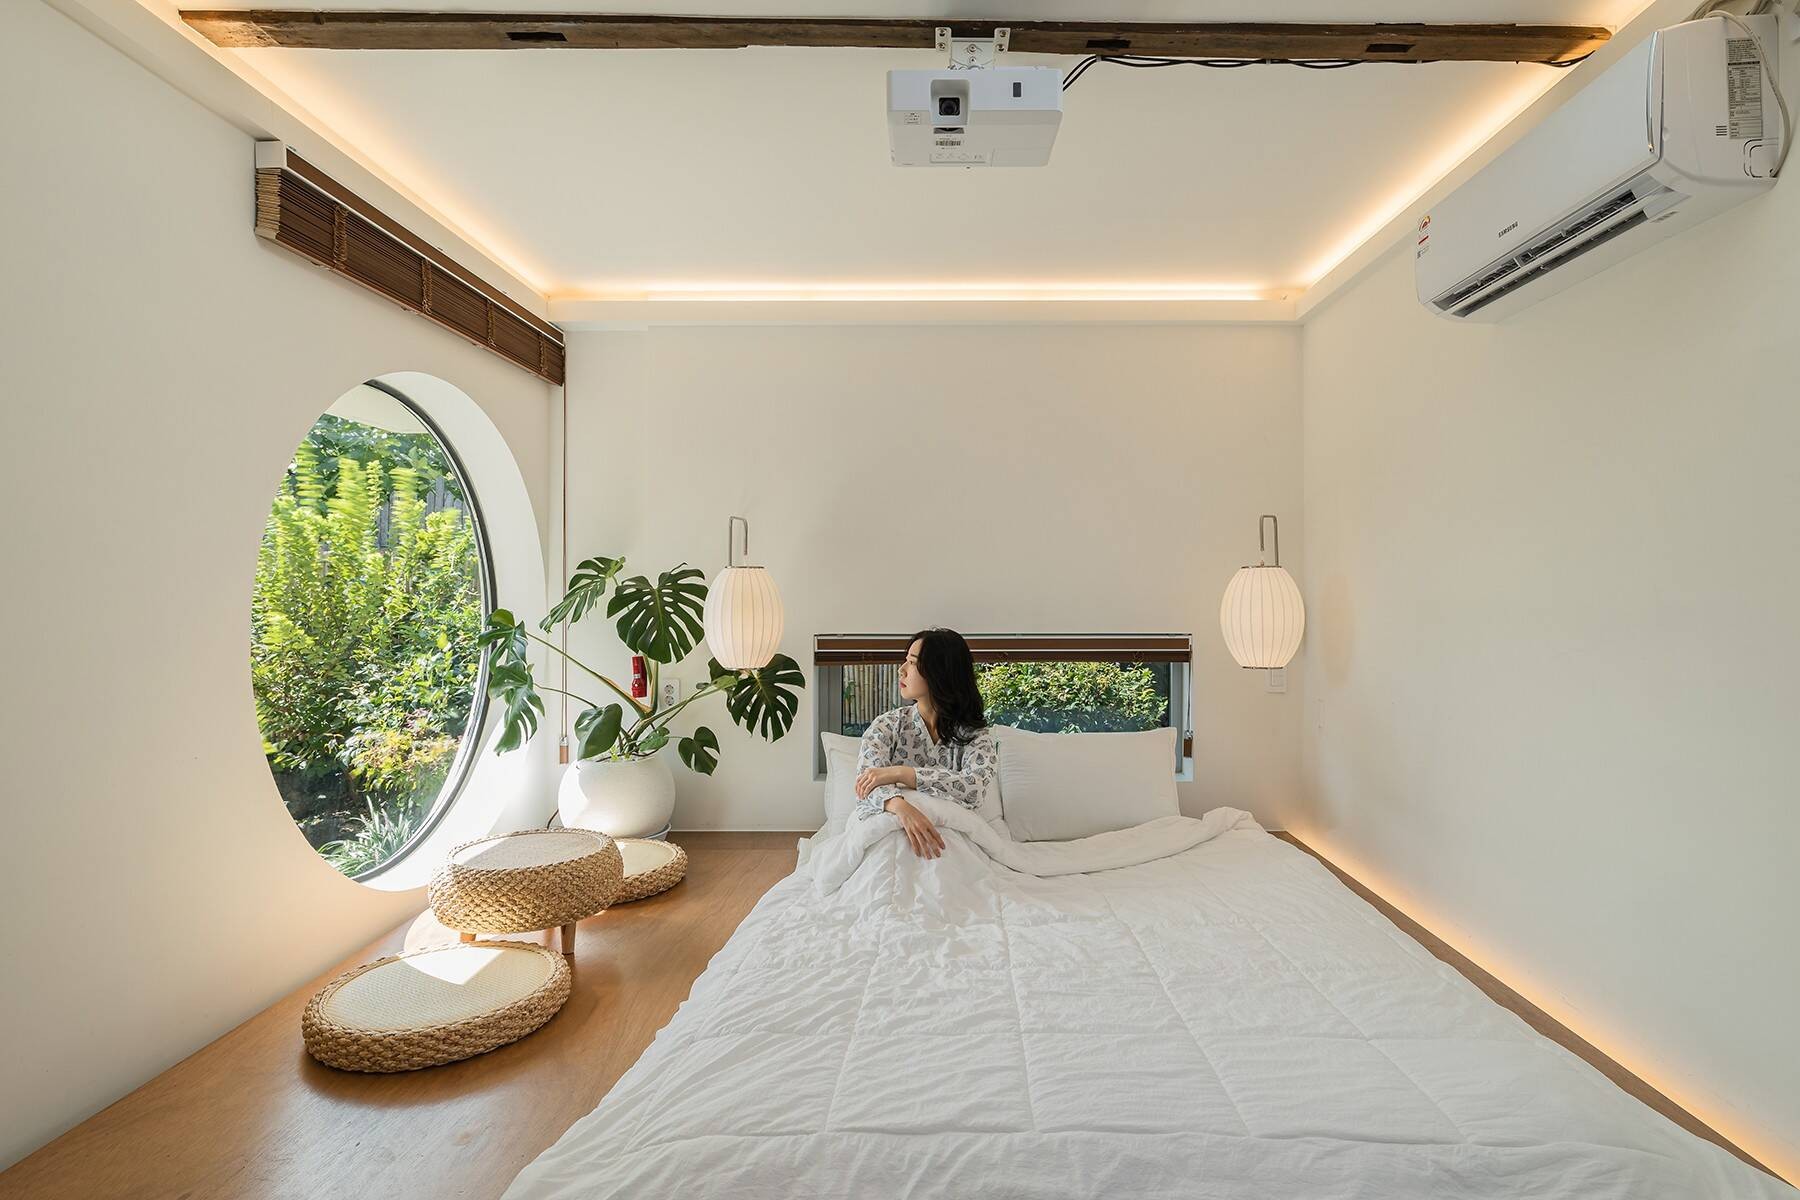 
Phòng ngủ tối giản với tông màu trắng làm chủ đạo
